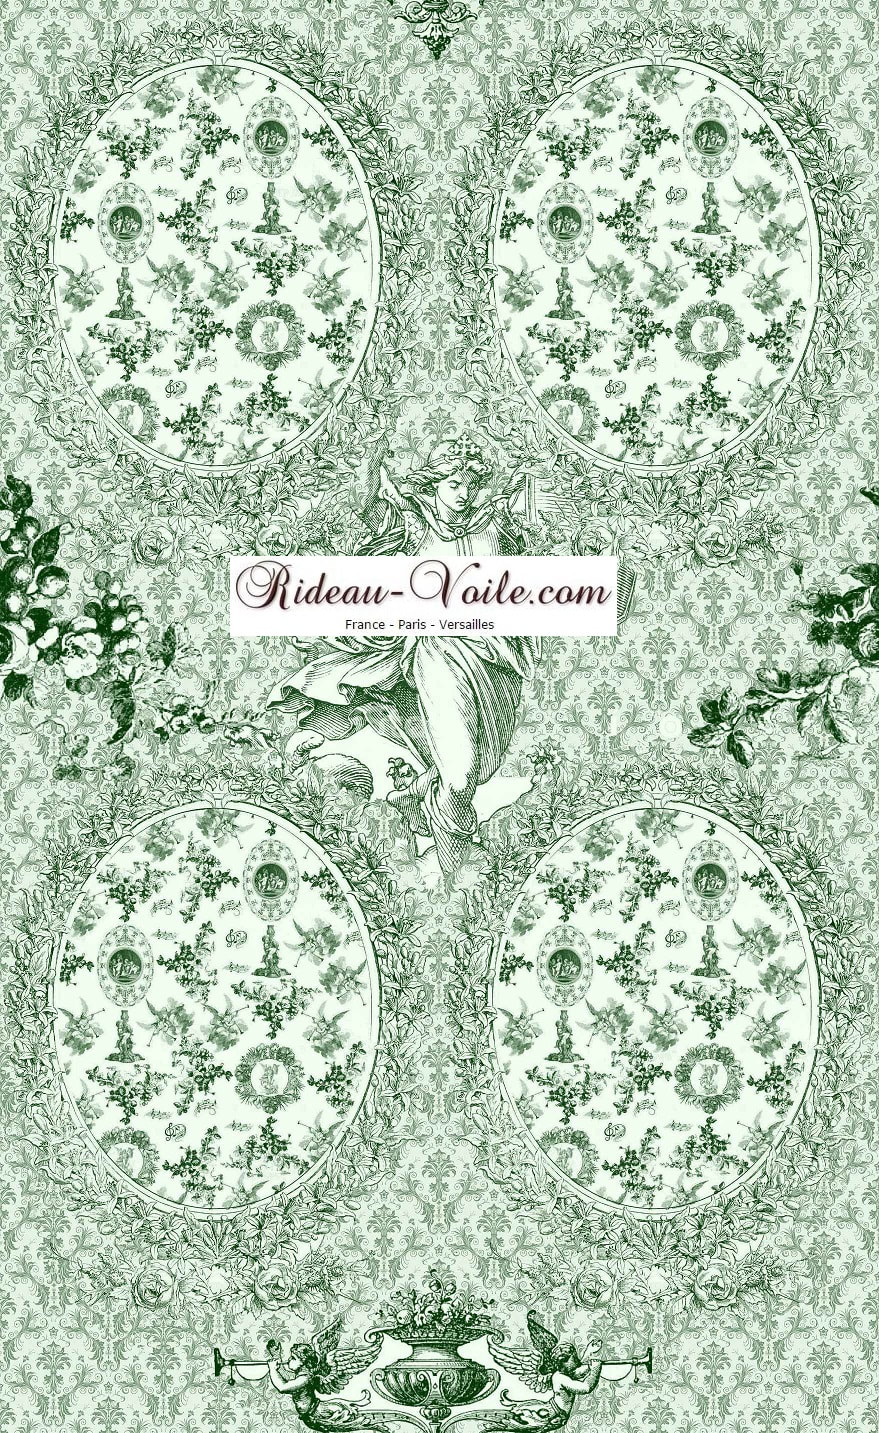 Toile de Jouy tissu ameublement motif imprimé décoration tapisserie au mètre confection sur mesure vert